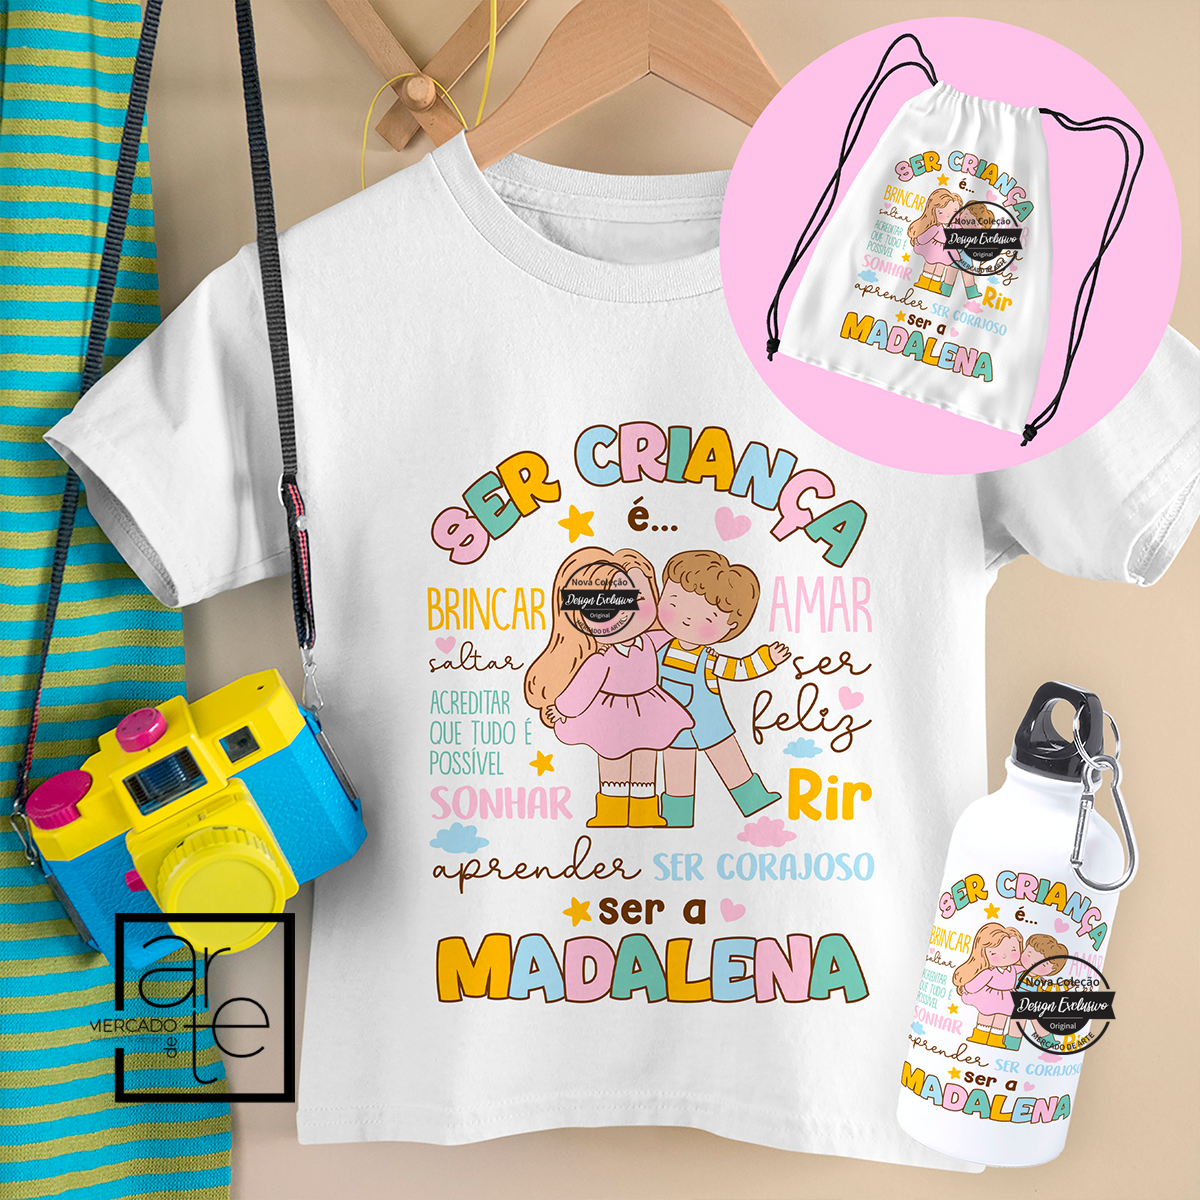 Novidade!  kit de uma criança feliz! Adoramos a nova coleção super colorida pensada especialmente para as crianças! Conjunto comporto por T-shirt 100% algodão, garrafa de 400ml e mochila. Vendido em conjunto ou separadamente.  REF:CRI056   